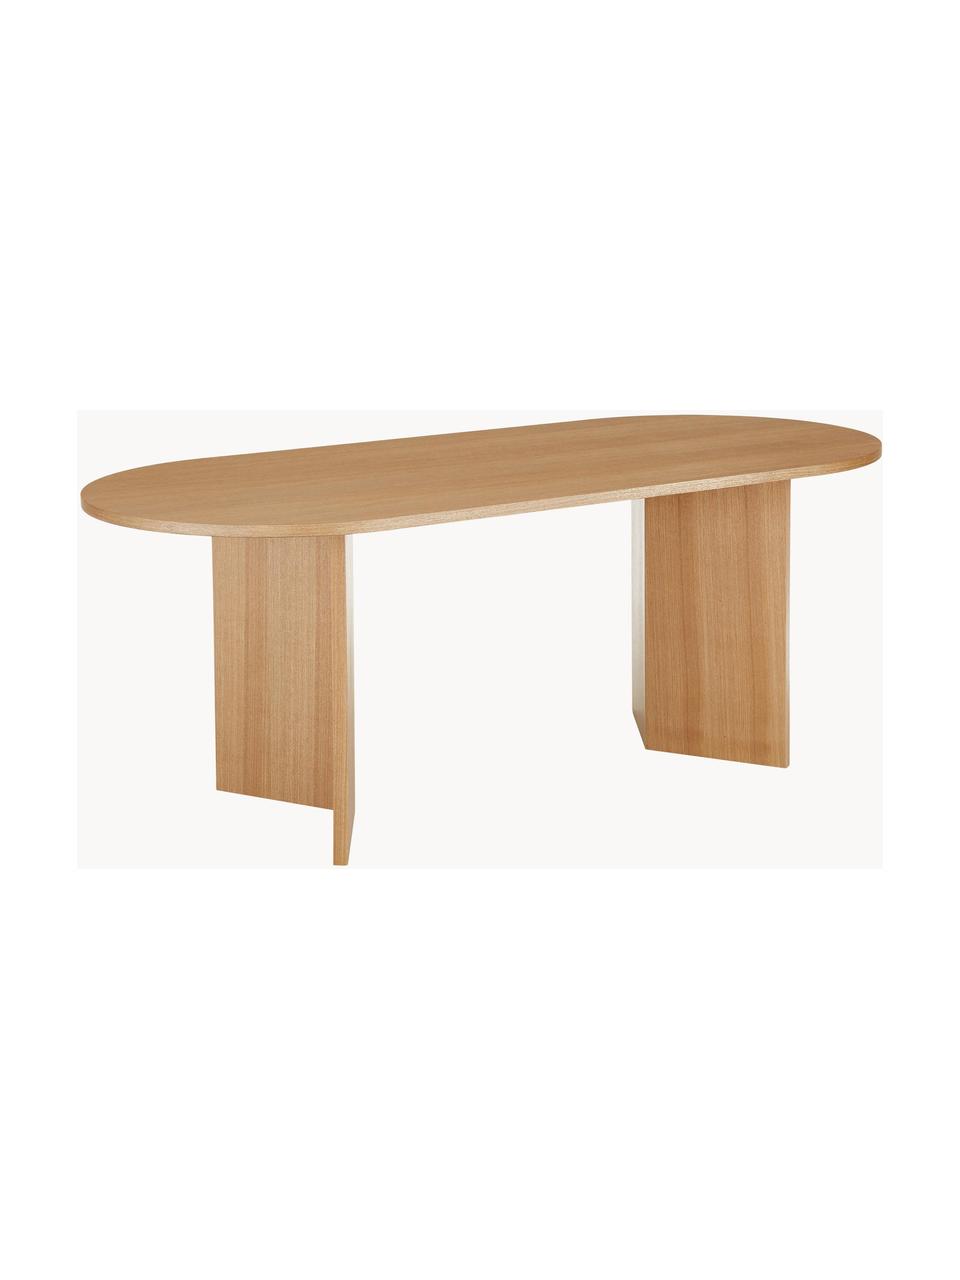 Dřevěný oválný jídelní stůl Toni, 200 x 90 cm, Lakovaná dřevovláknitá deska střední hustoty (MDF) s dubovou dýhou, Jasanové dřevo, Š 200 cm, H 90 cm